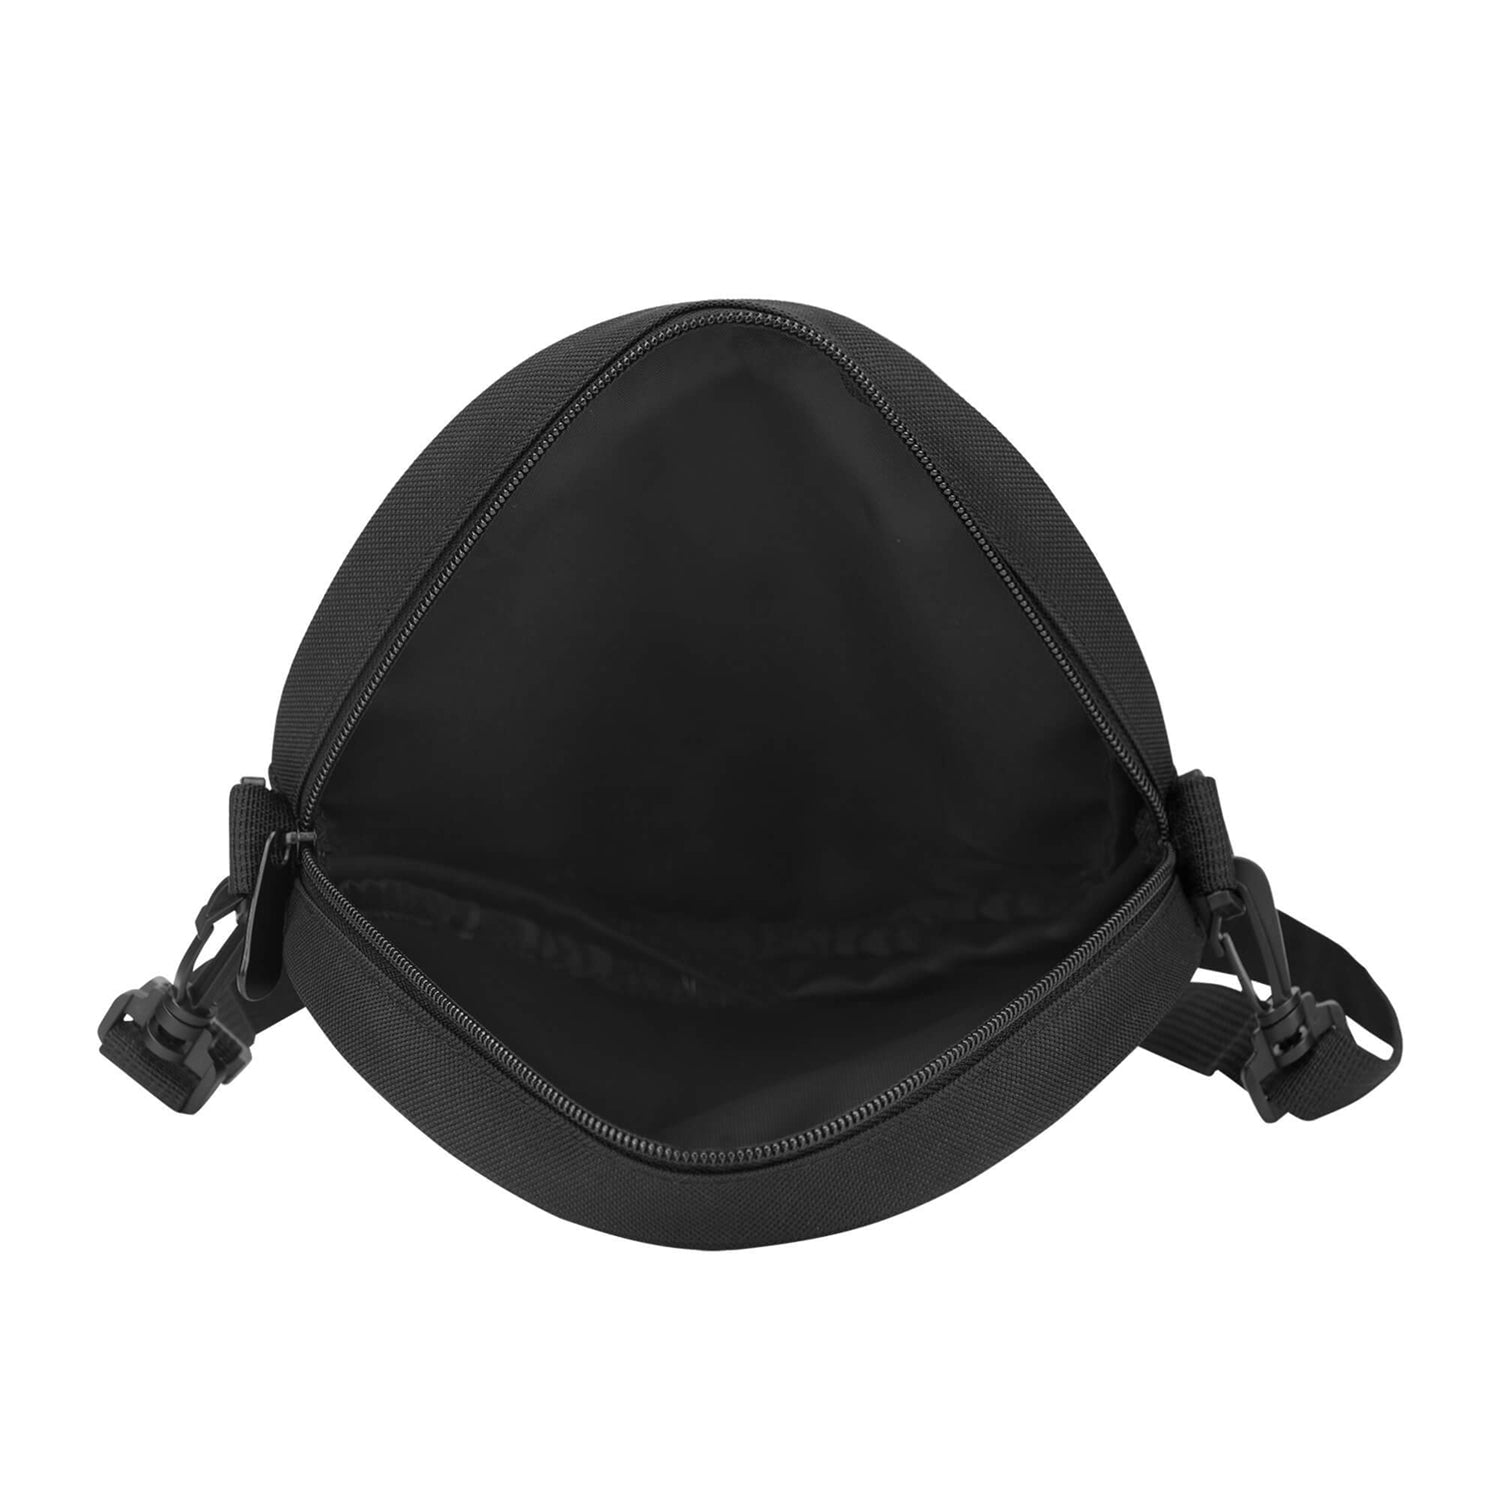 moore-tartan-round-satchel-bags